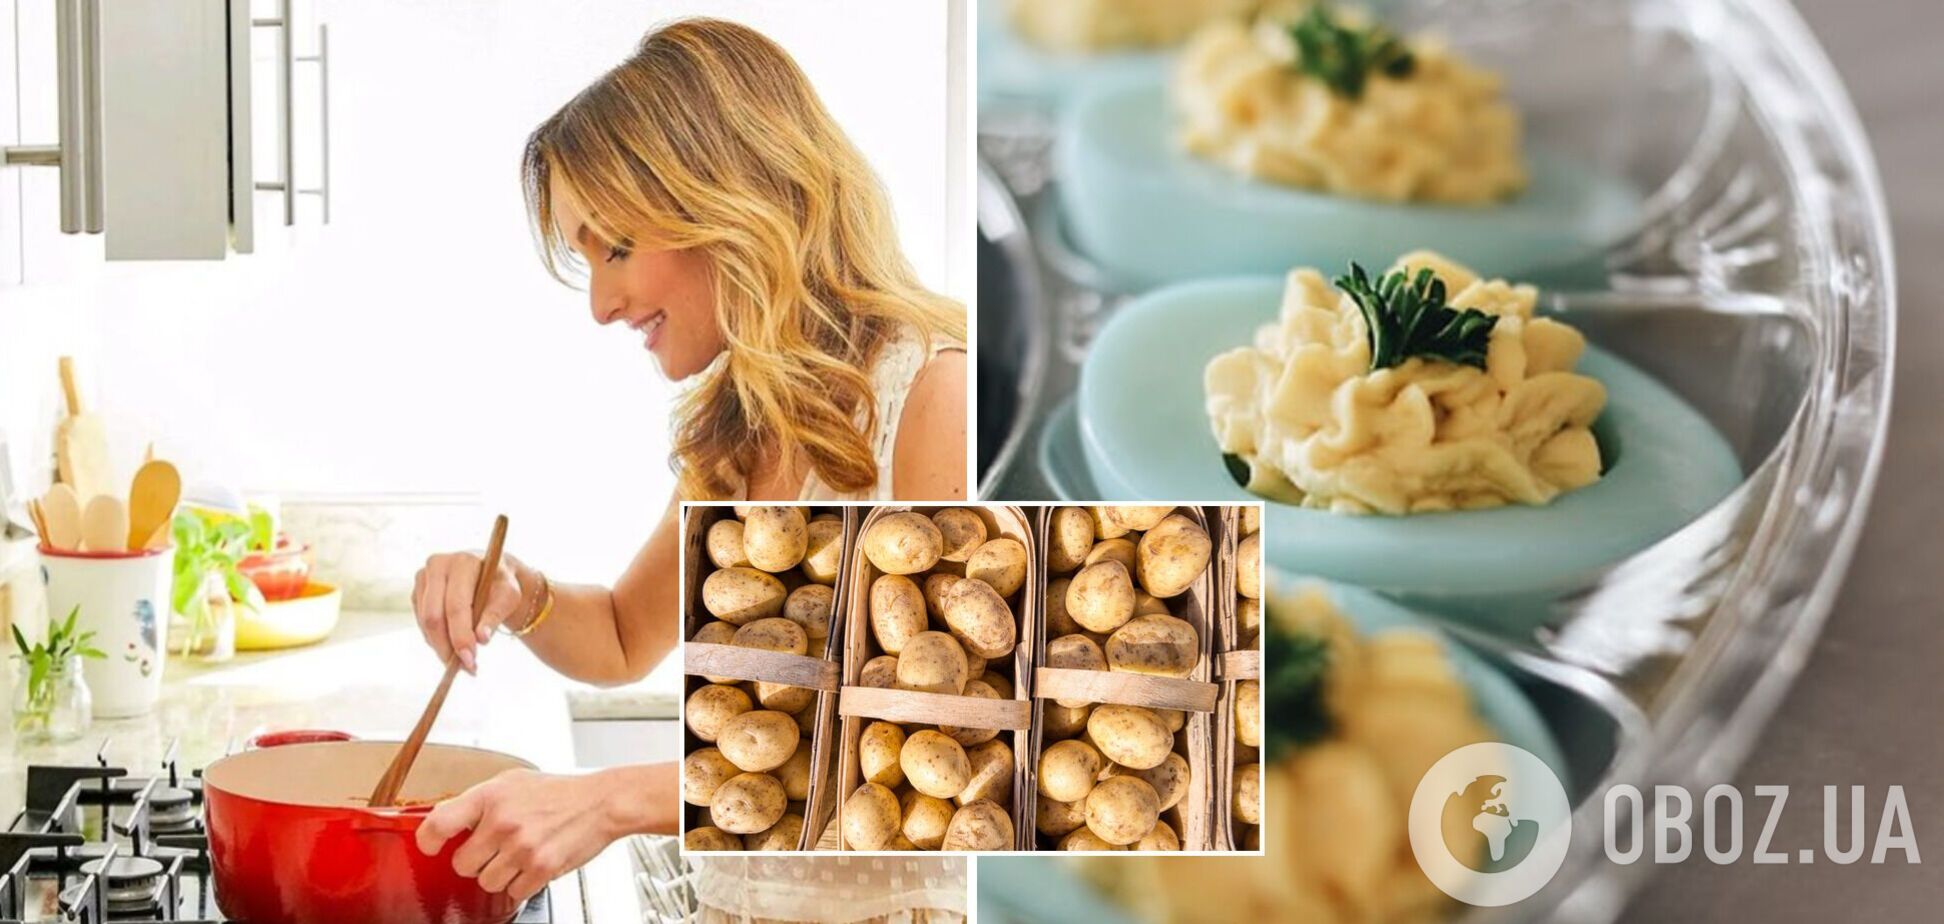 Італійська хитрість зробить картопляне пюре неймовірним: секрет від шеф-кухаря